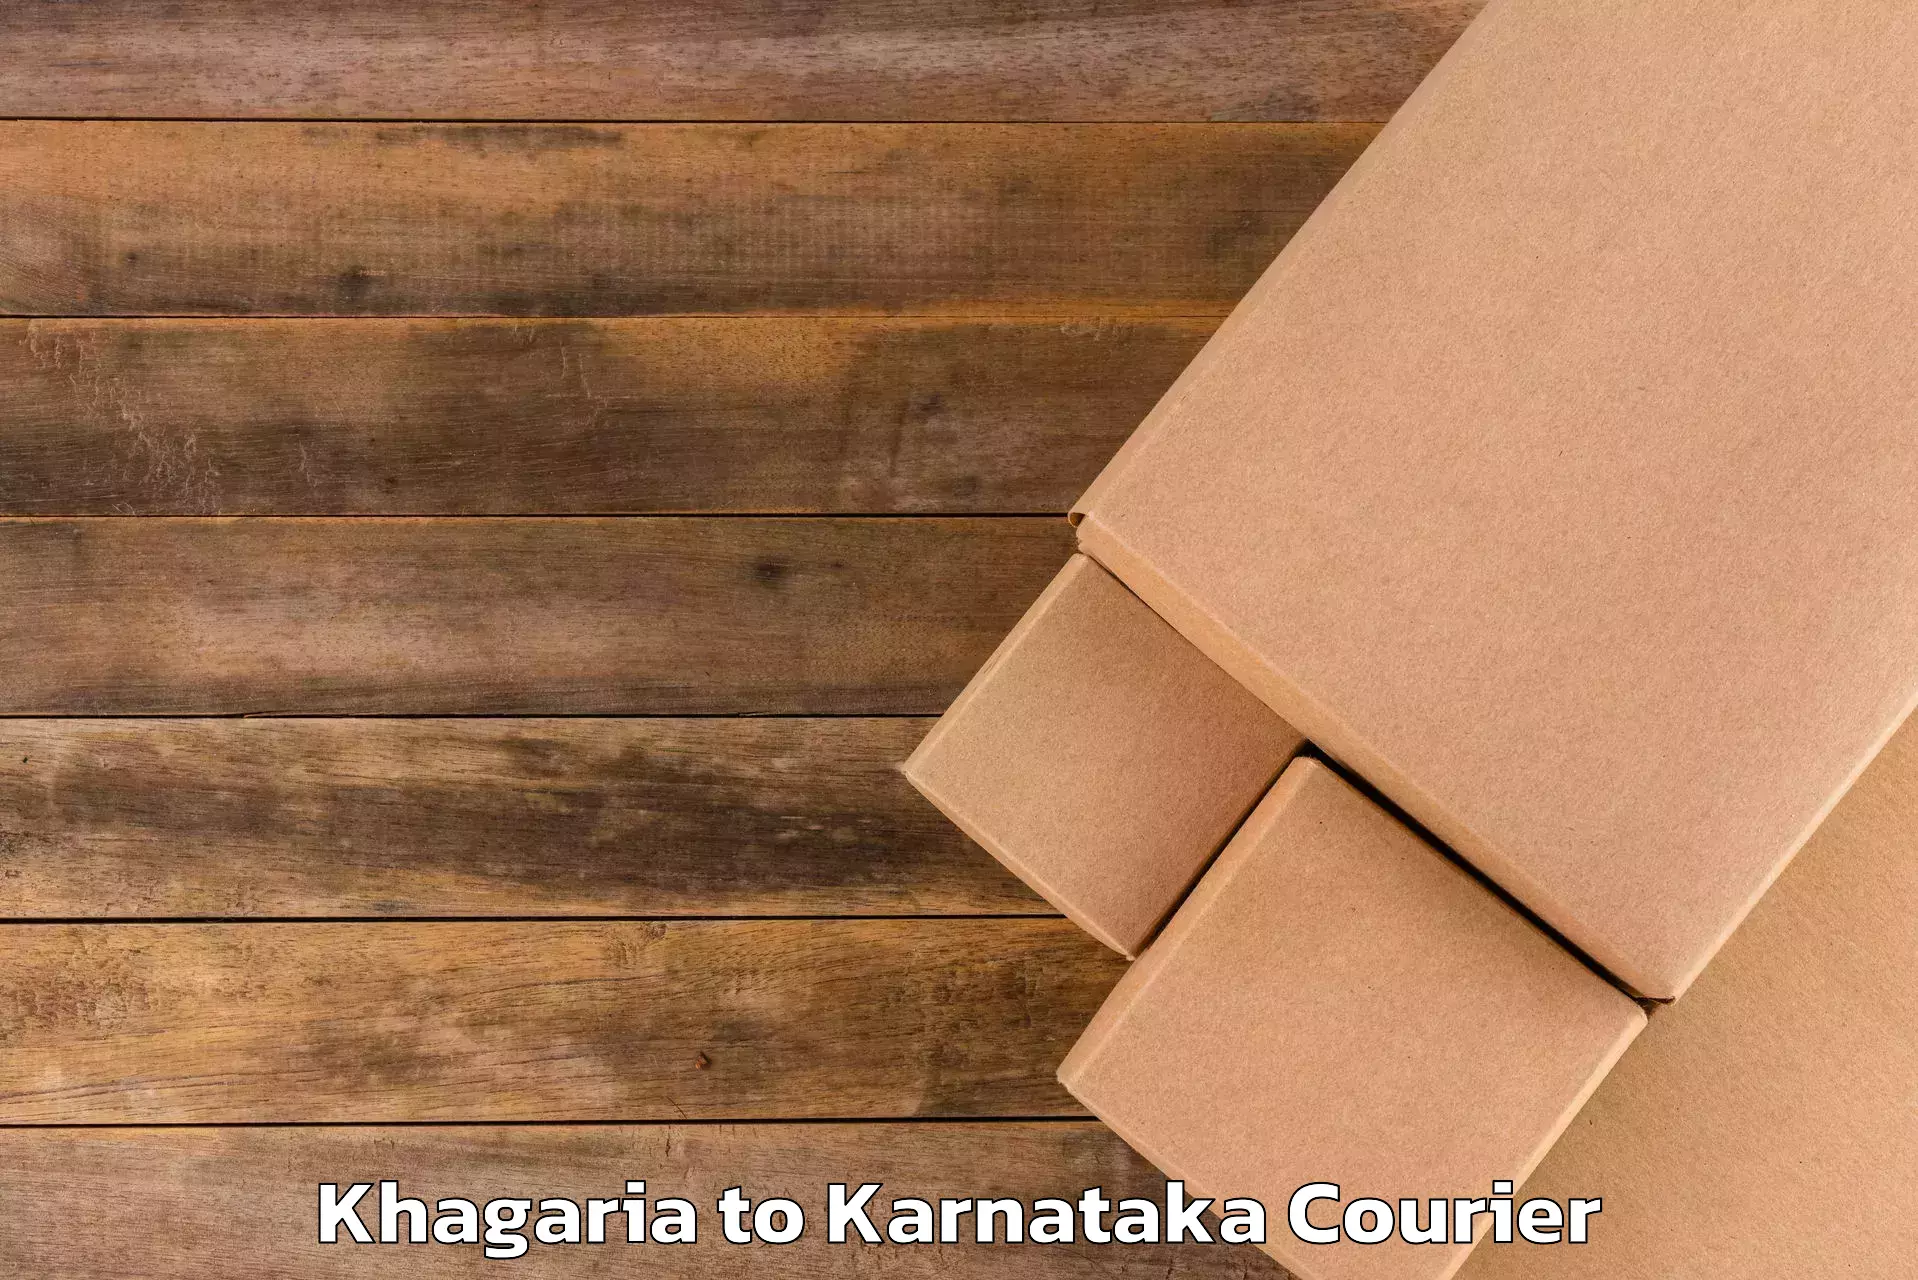 Luggage transport company Khagaria to Kanakapura